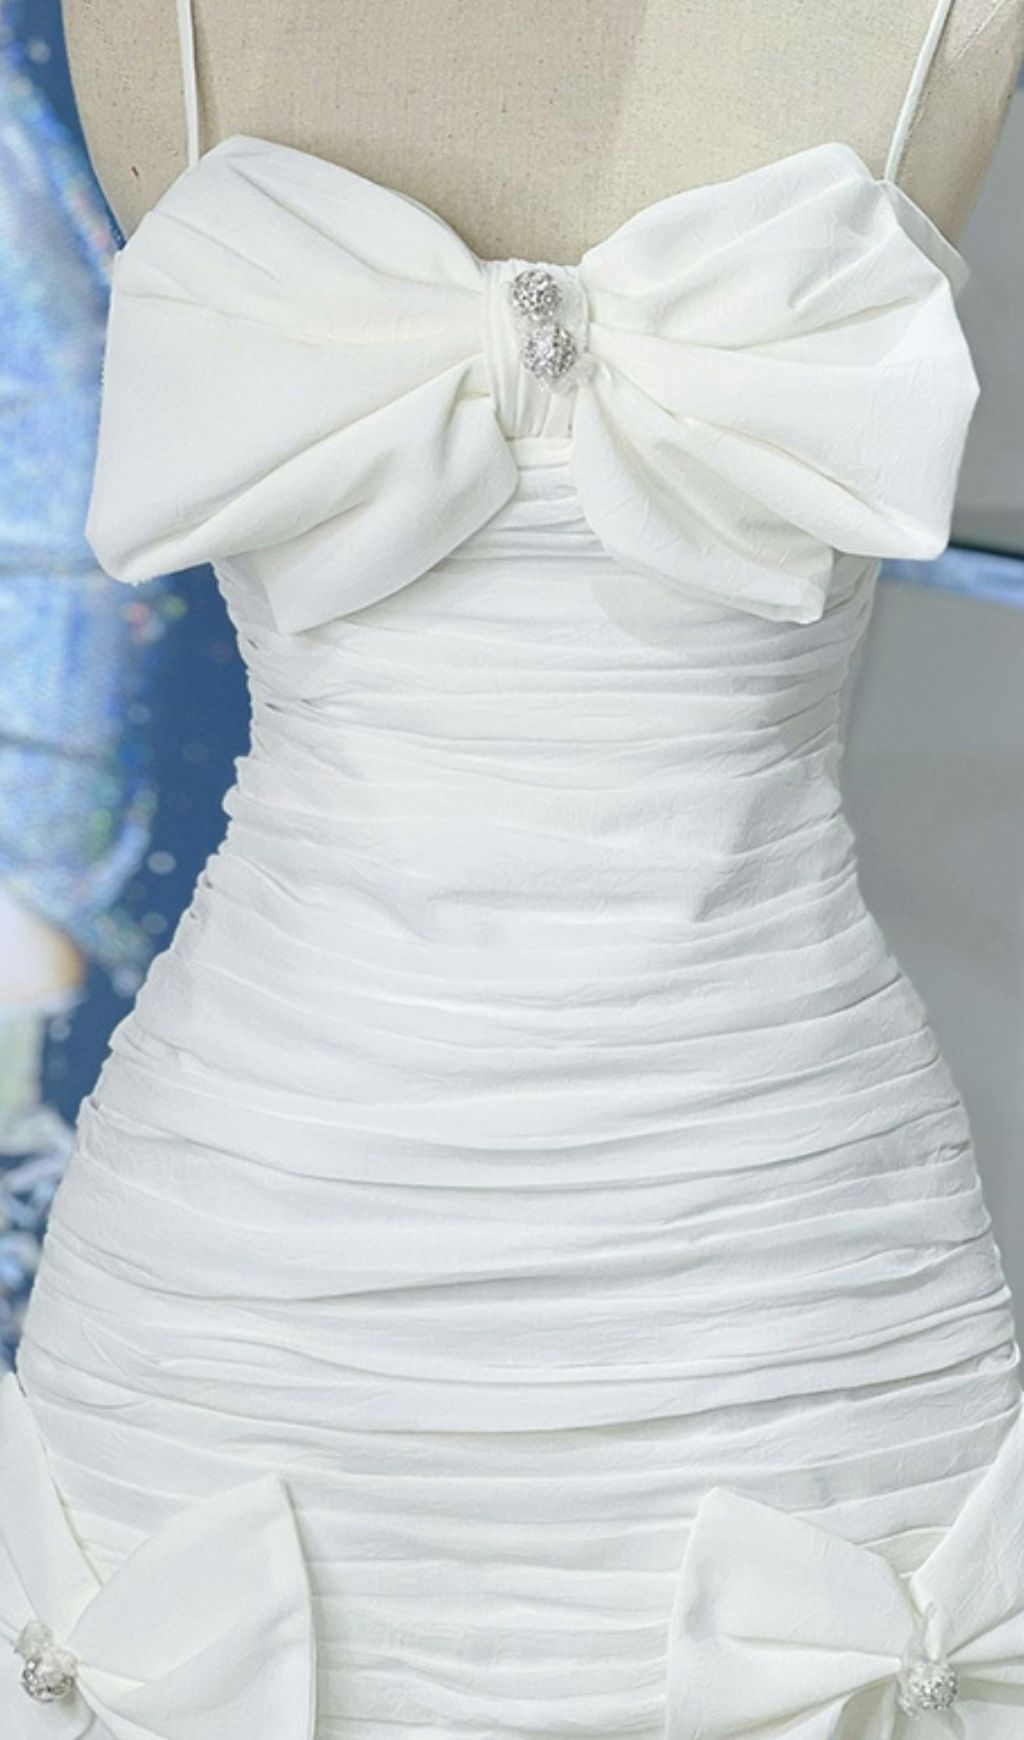 Strappy Bandeau Midi Dress In White